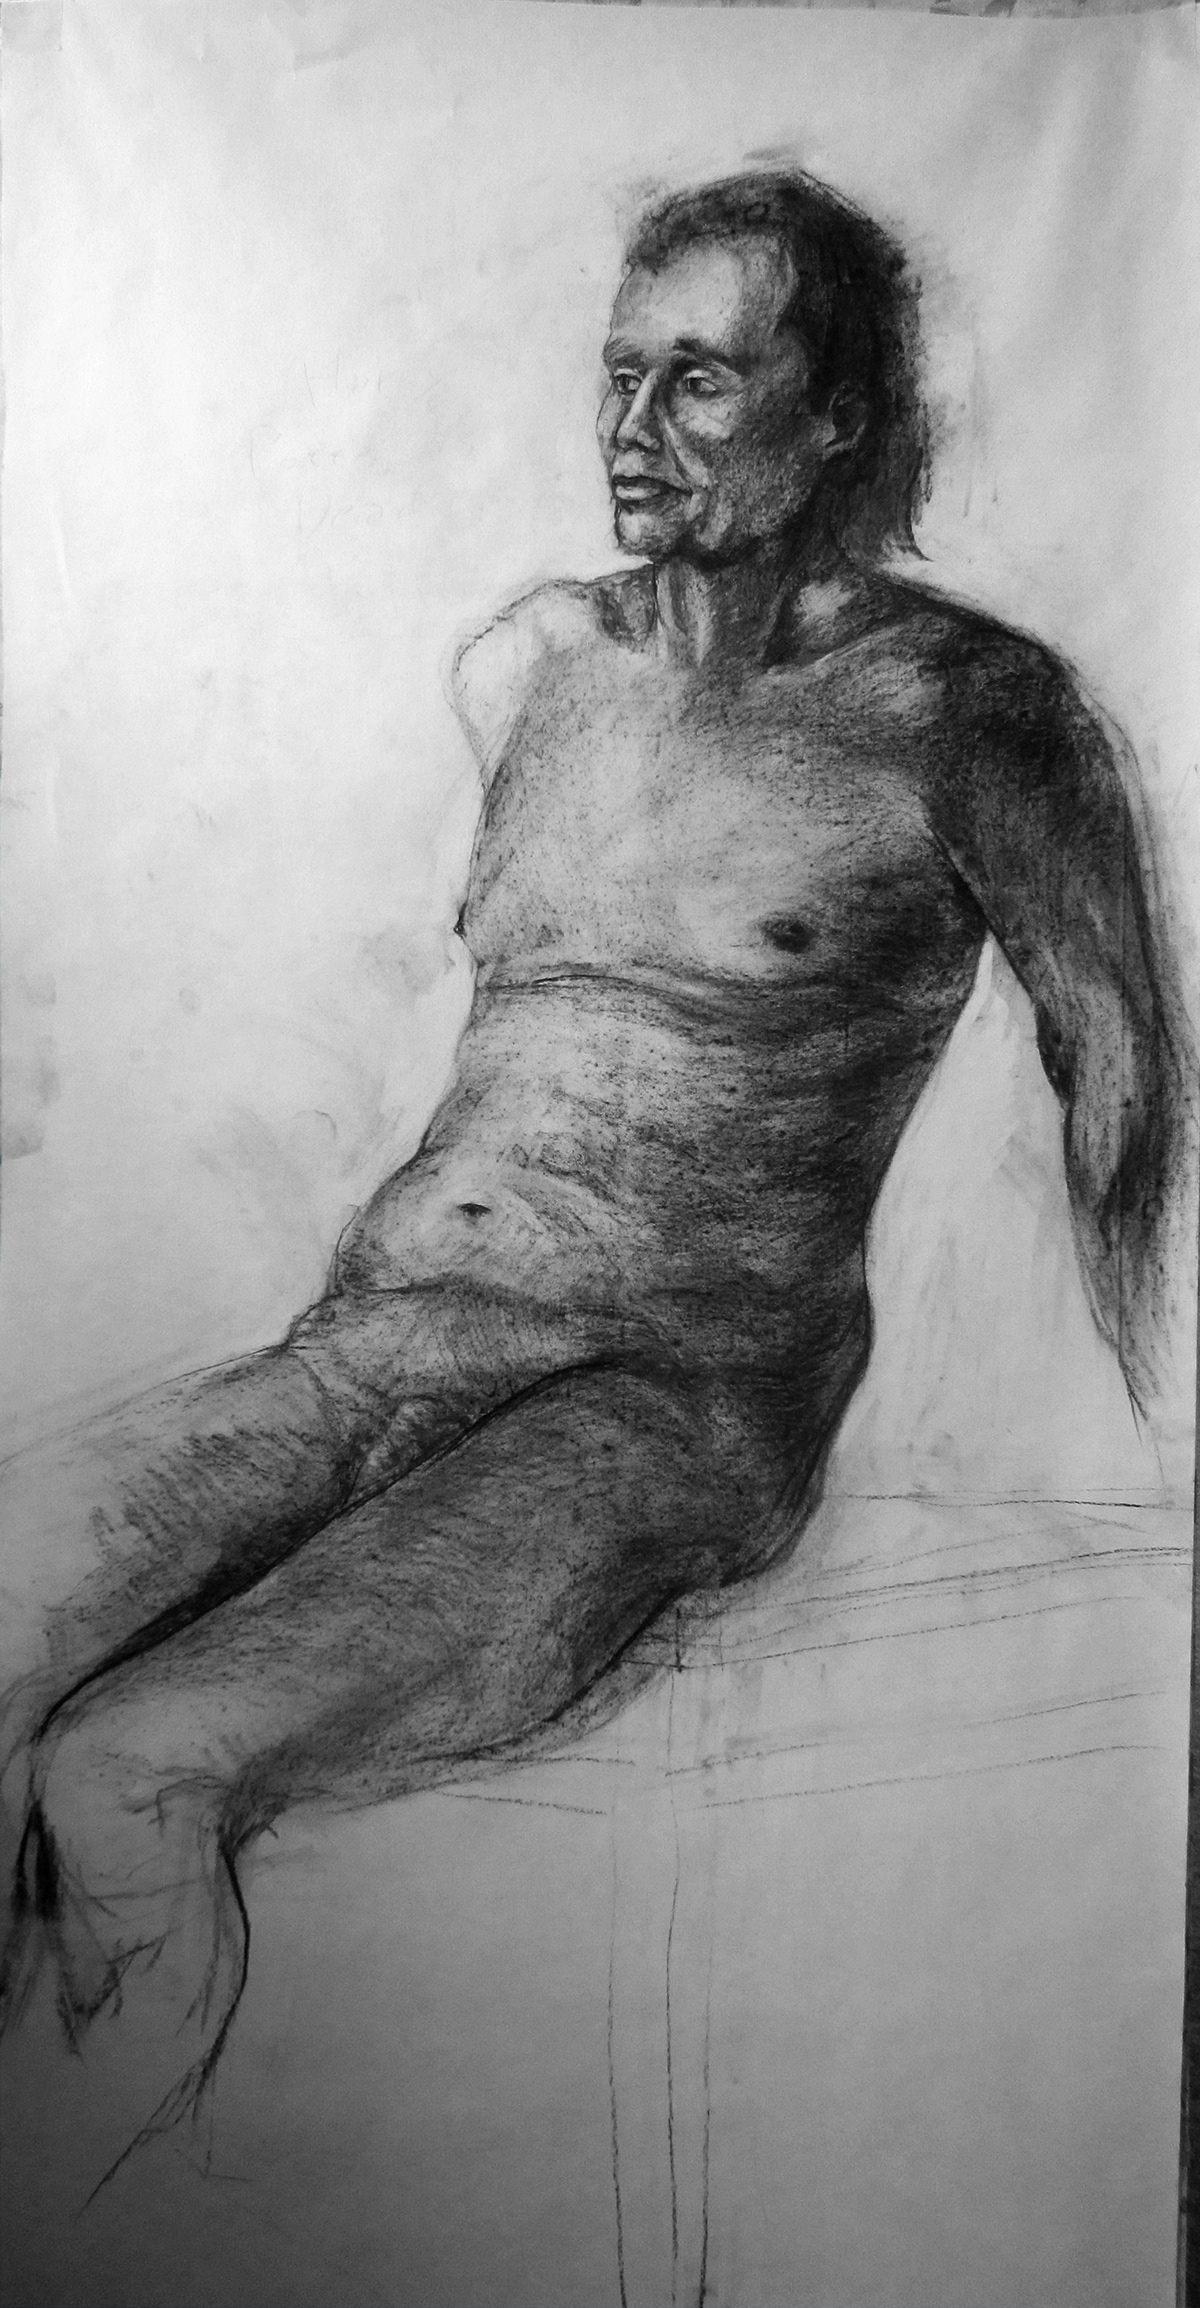 draw drawings stringhead figure study nude studies